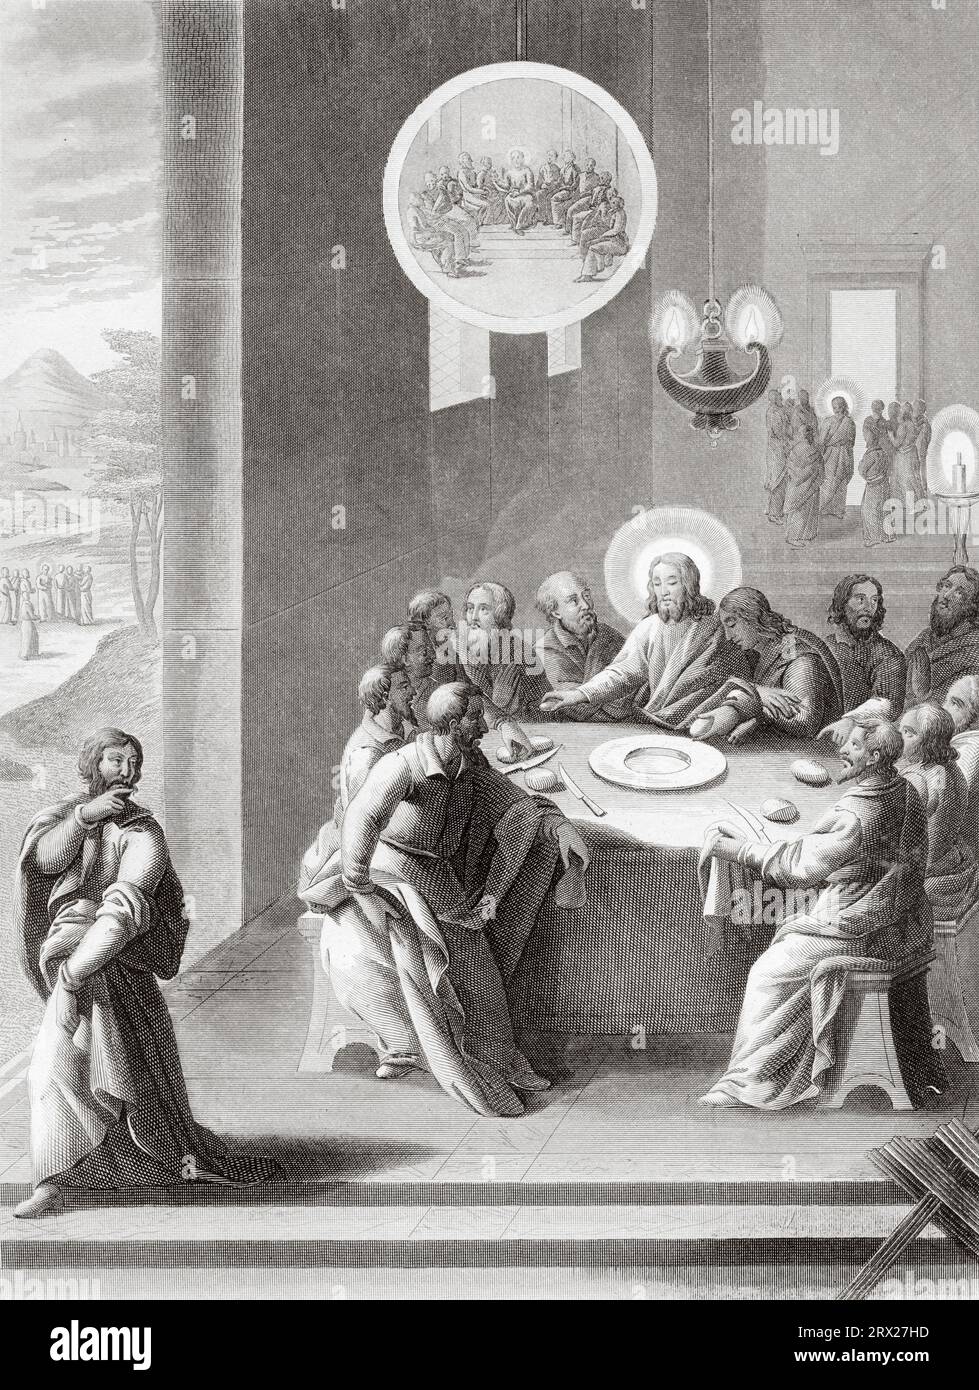 Das Letzte Abendmahl, Judas geht hinaus, um seinen Verrat an Jesus zu vollenden. Illustration für das Leben unseres Herrn Jesus Christus, geschrieben von den vier Evangelisten, 1853 Stockfoto